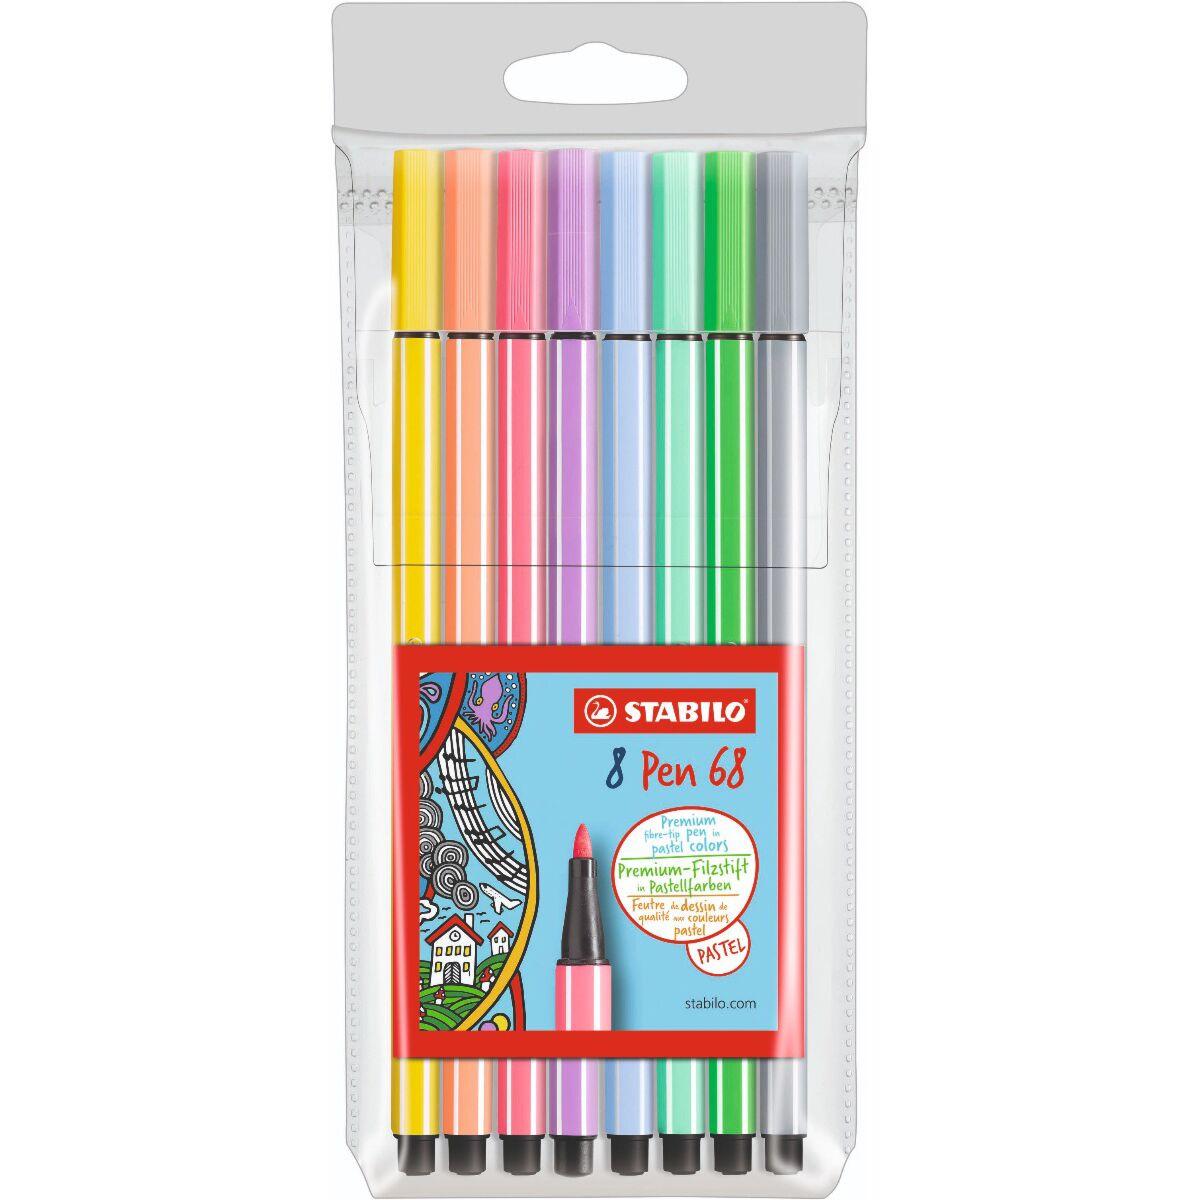 Фломастеры STABILO Pen 68, 8 пастельных цветов, фото 1